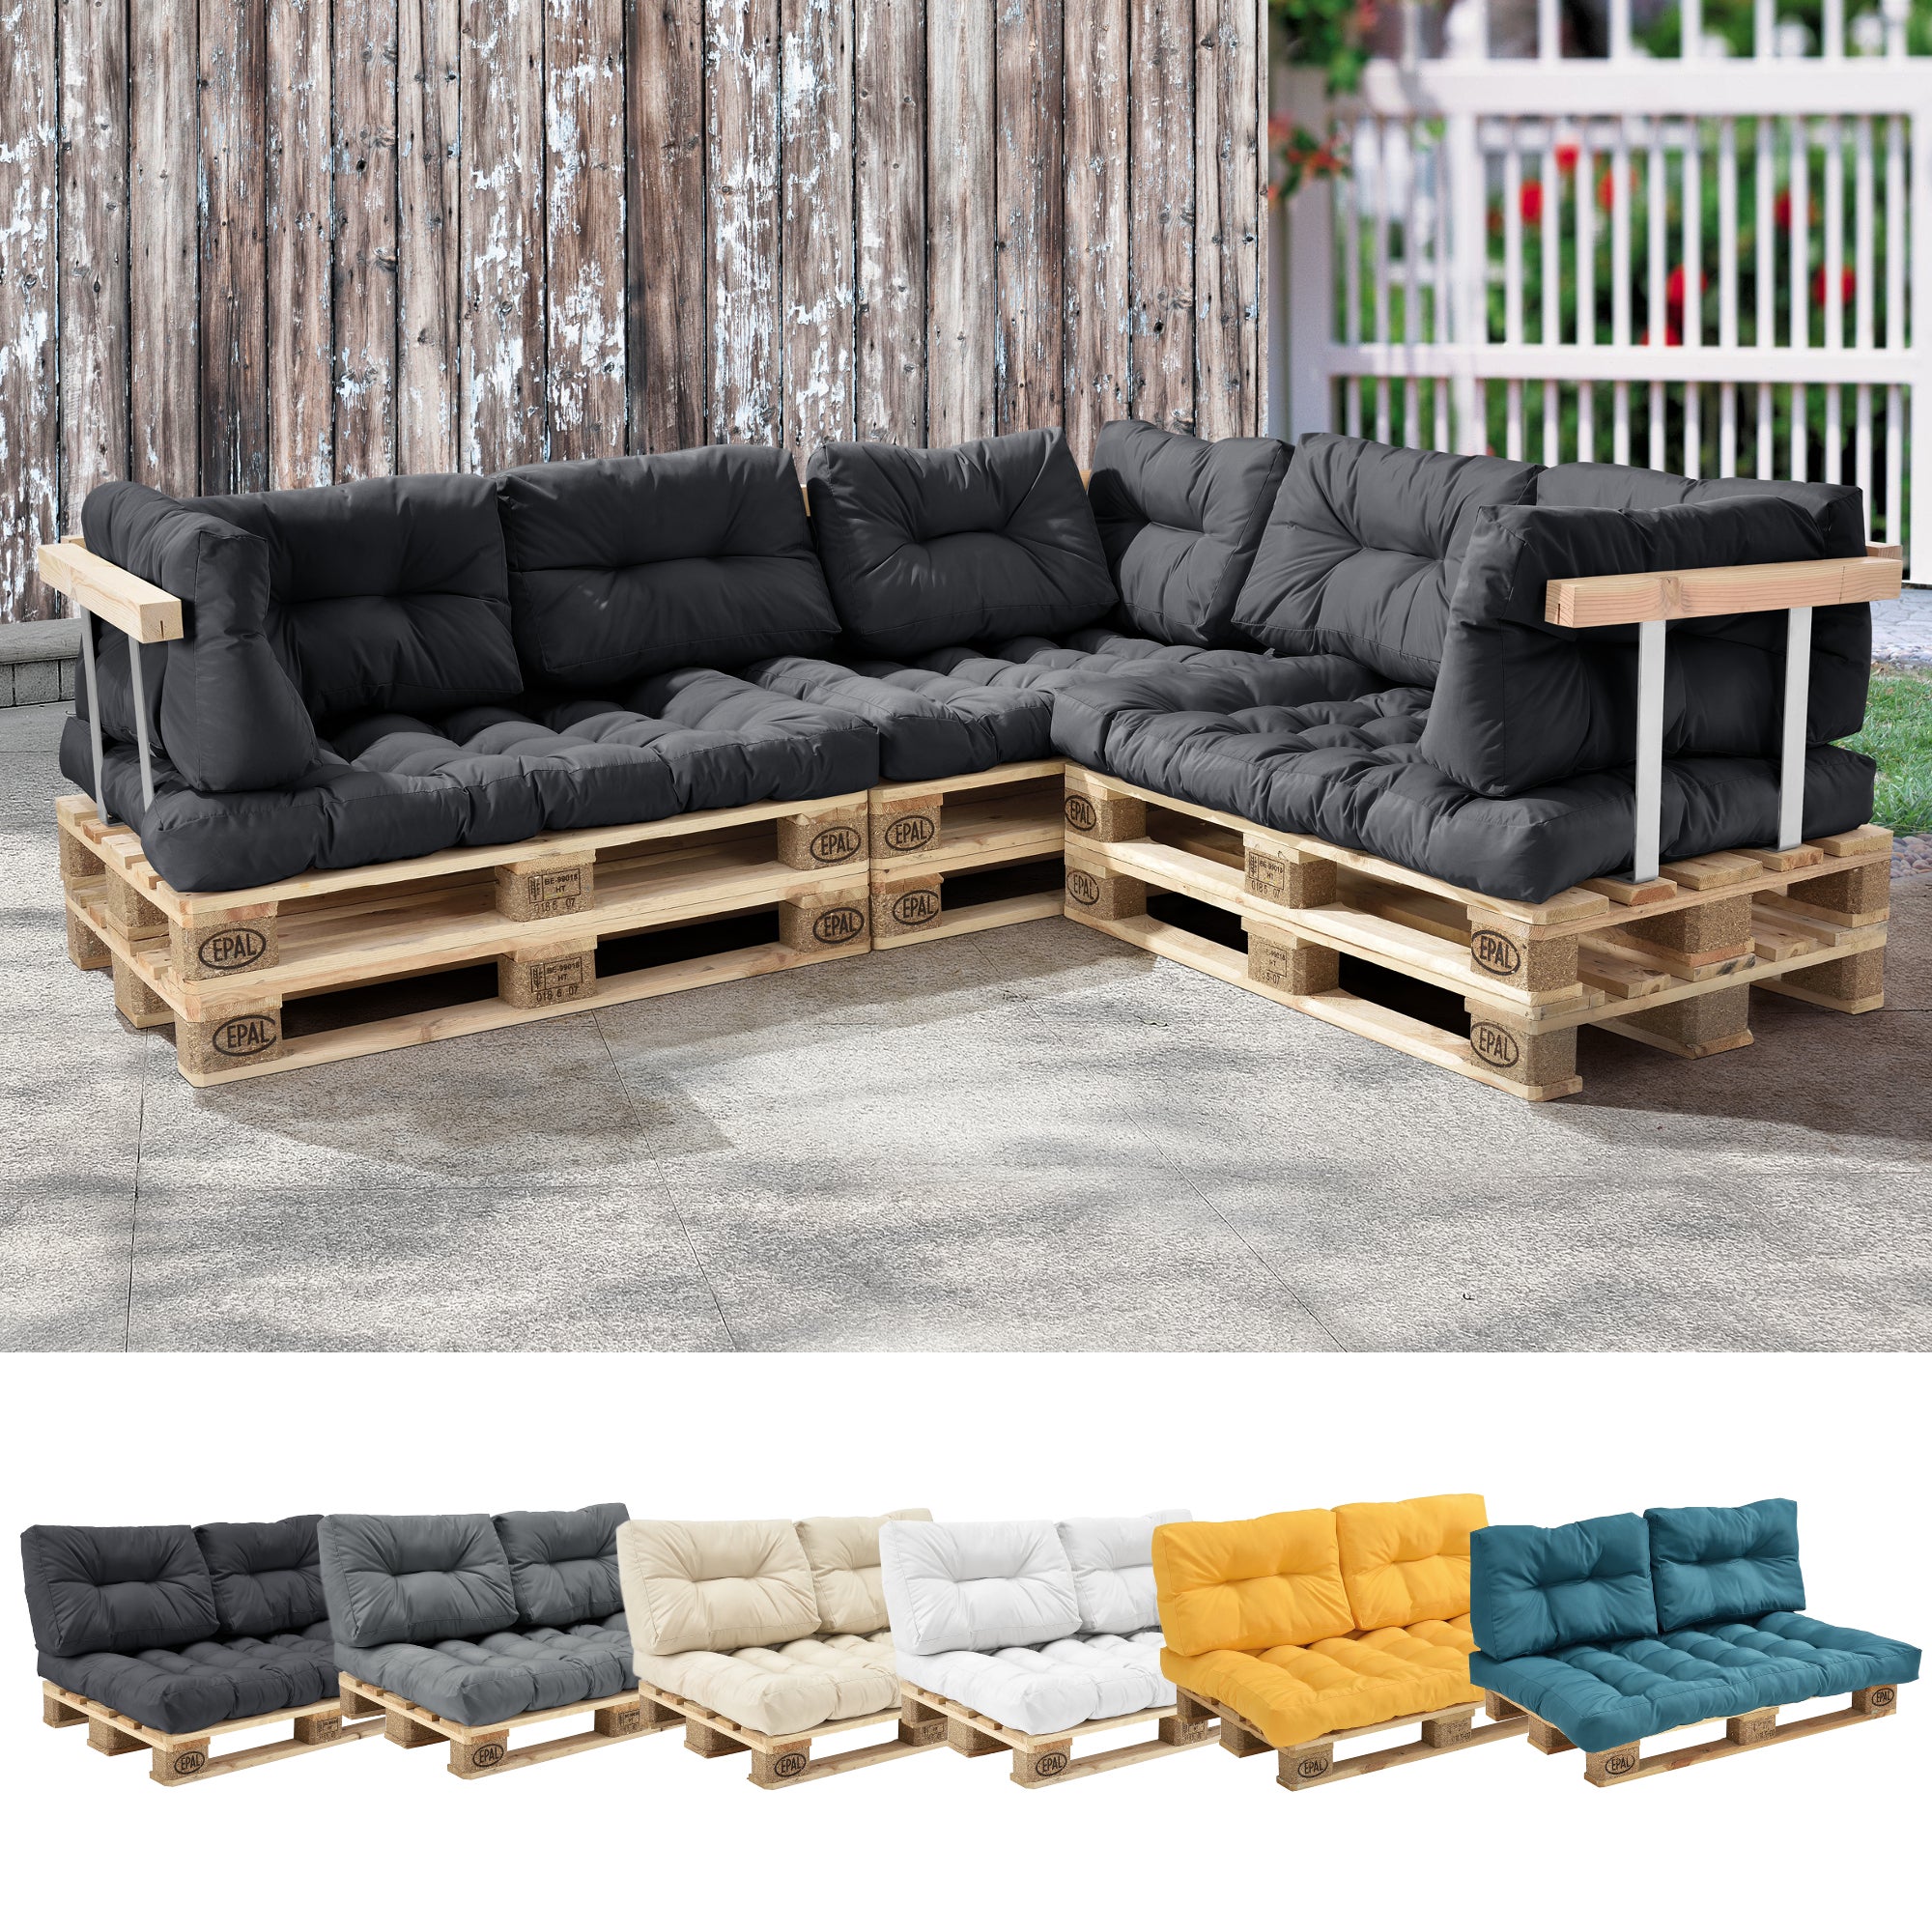 en.casa] 1x Cuscino schienale per divano paletta euro [grigio scuro]  cuscini per palette supporto In/Outdoor mobili imbottiti